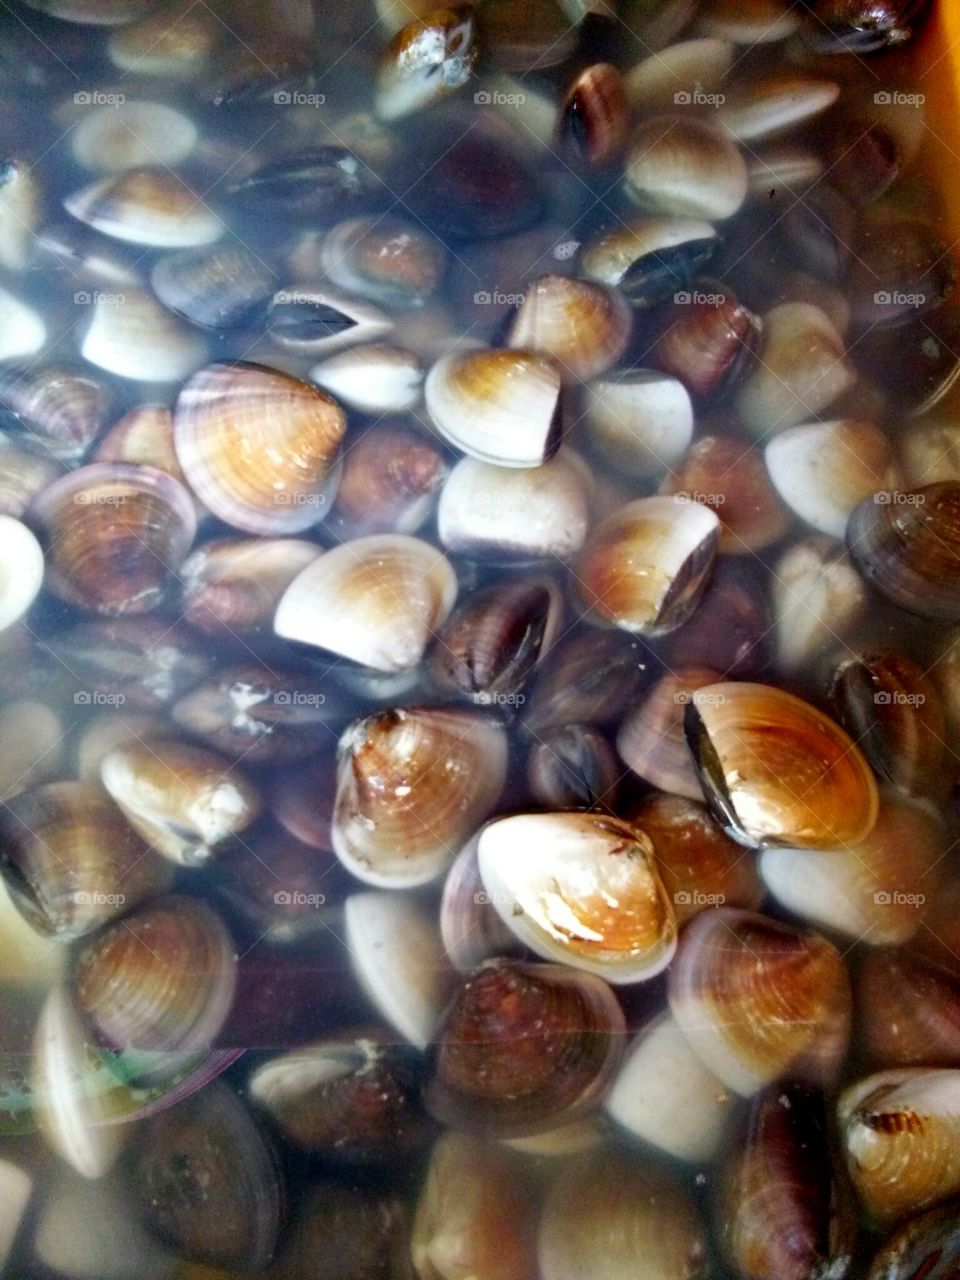 malaysia fresh clams